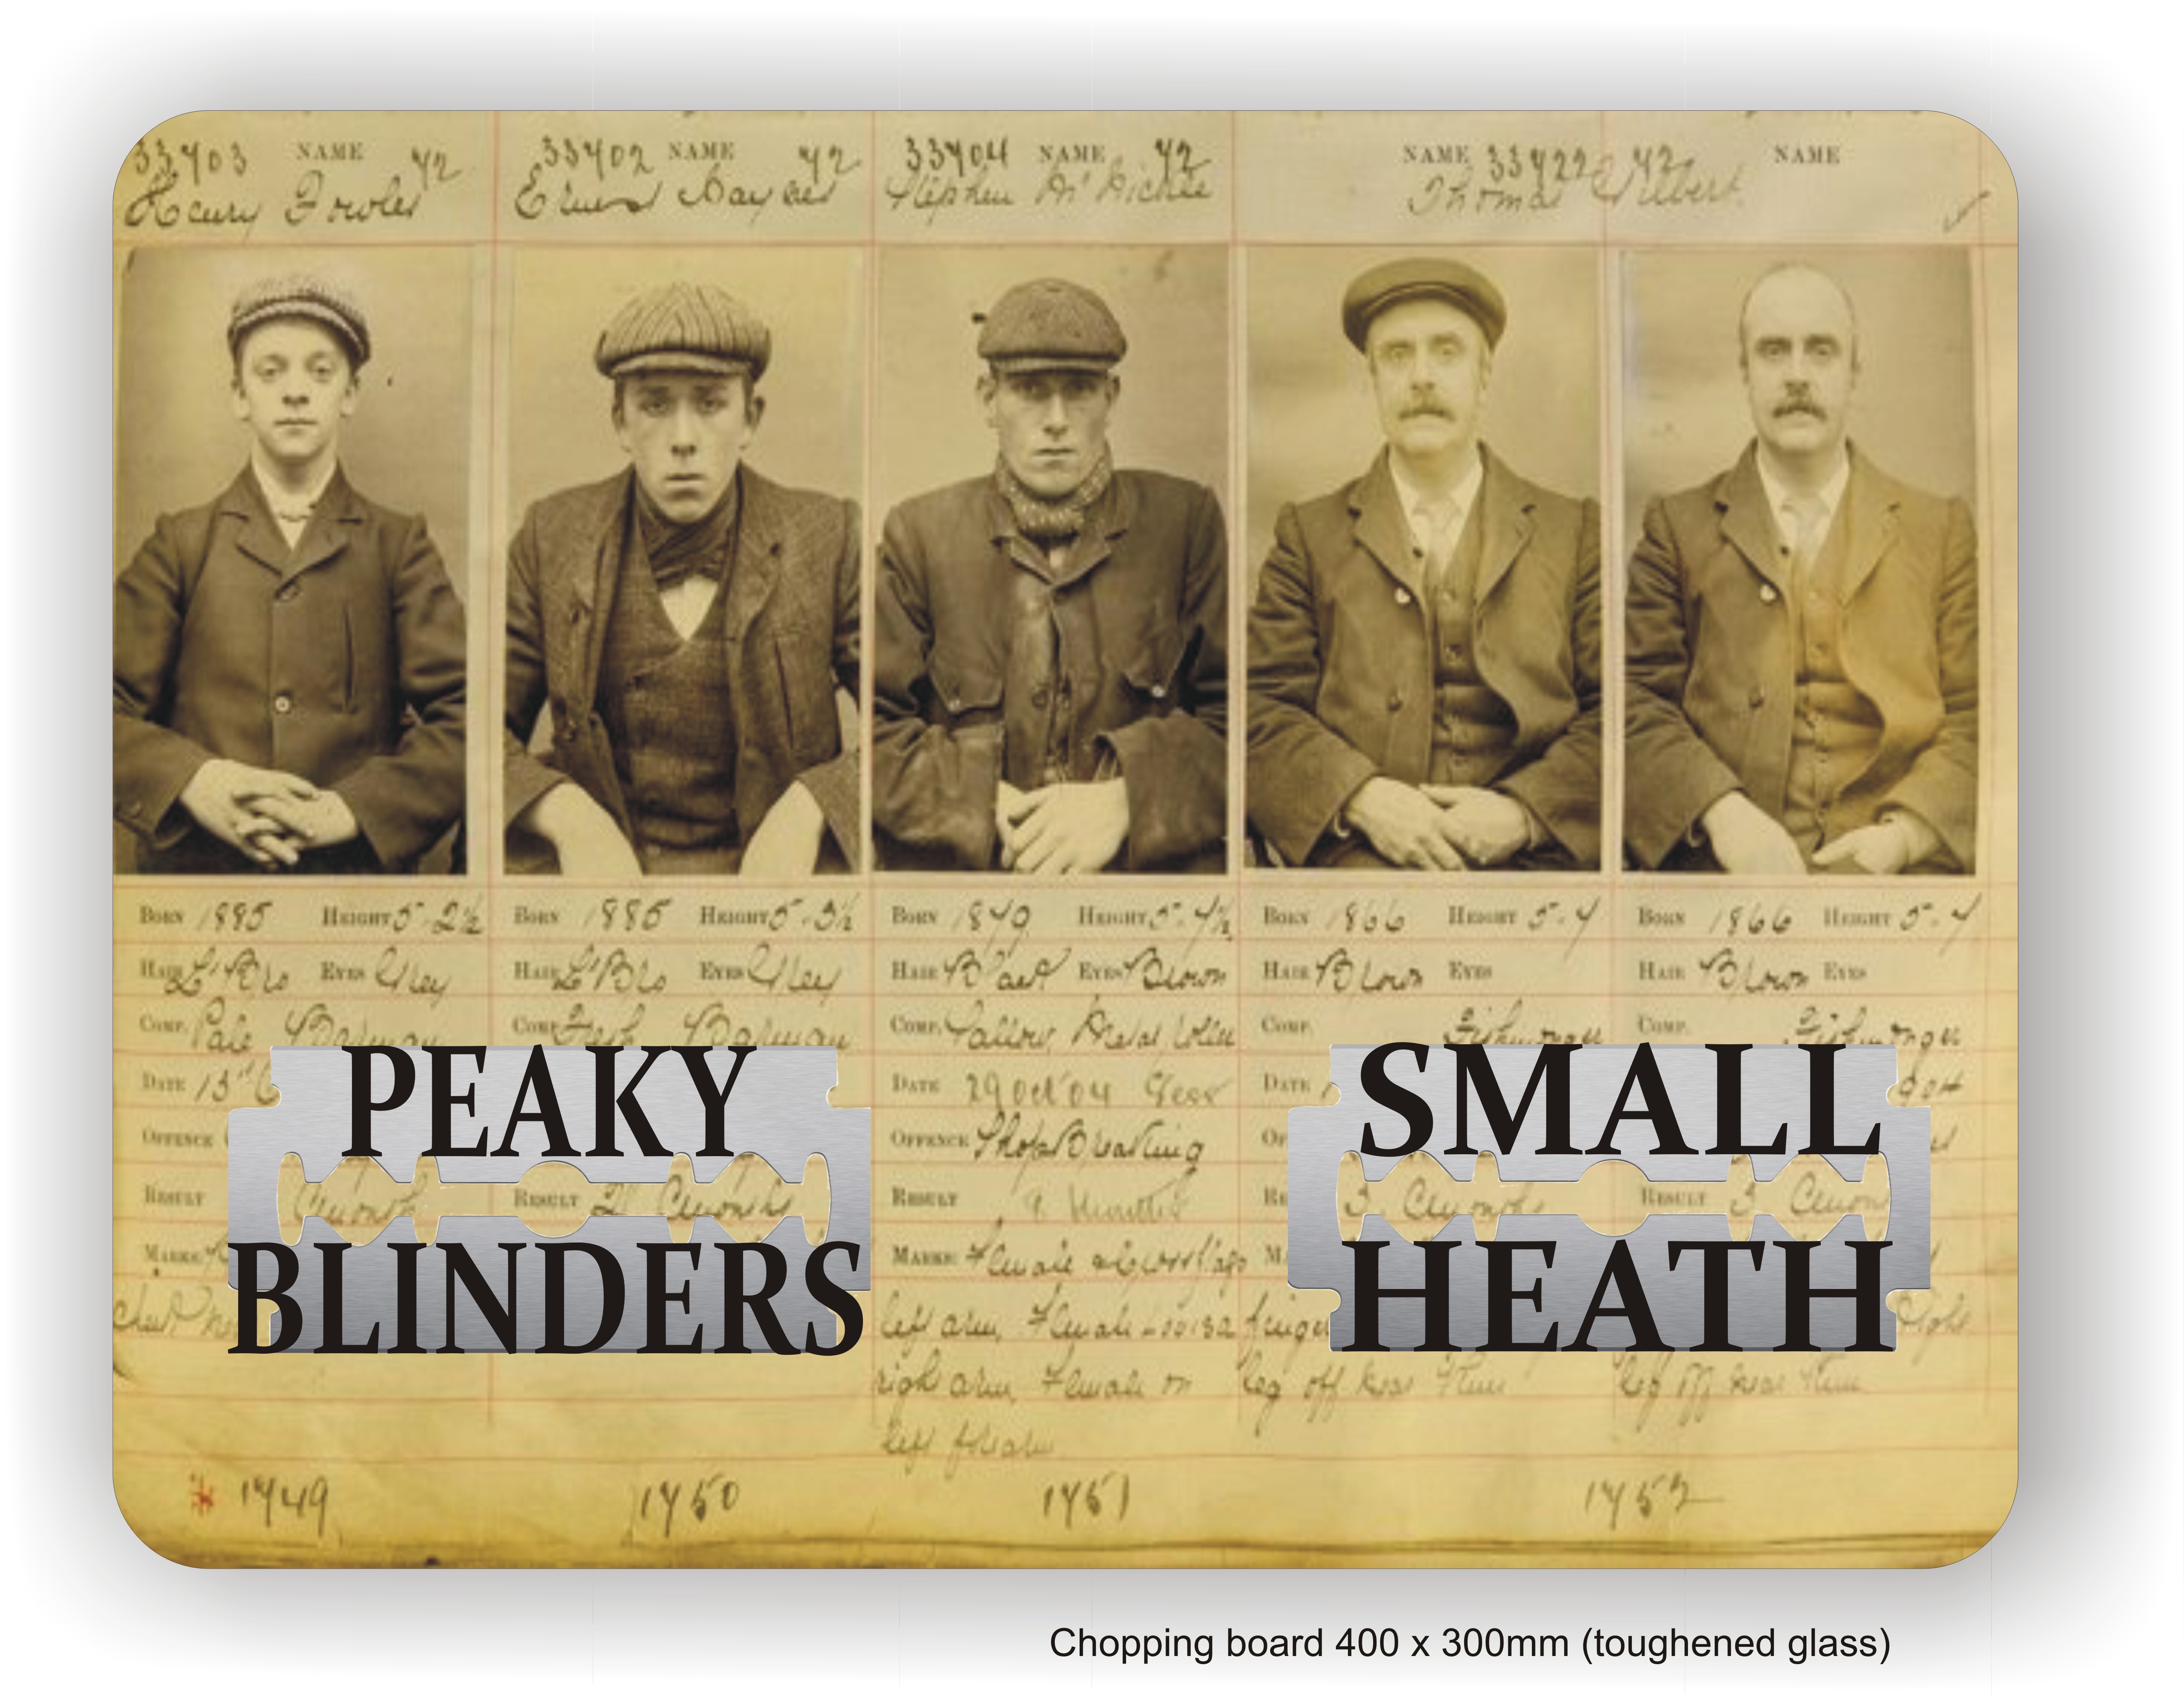 Peaky Blinders Wallpapers - Peaky Blinders Small Heath Birmingham , HD Wallpaper & Backgrounds